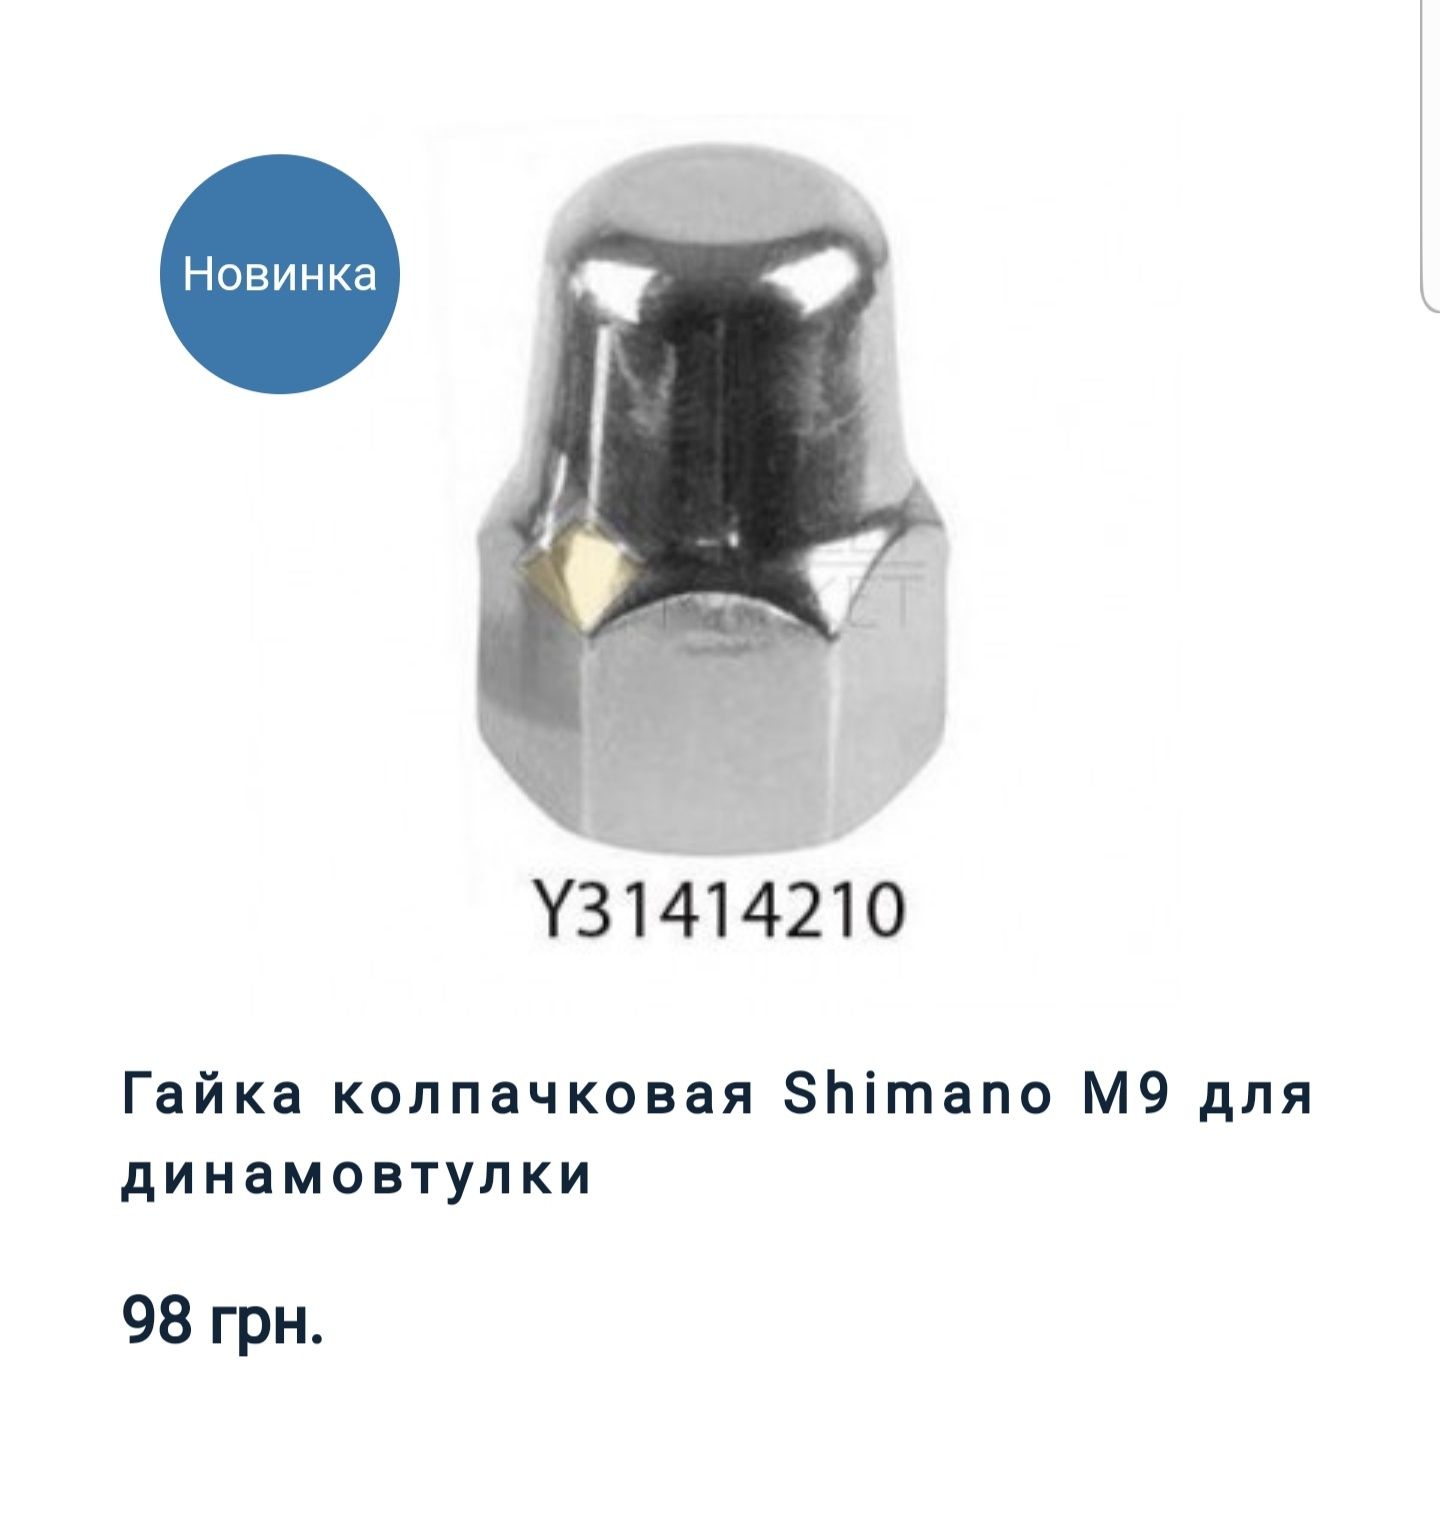 Гайки для планетарної втулки Shimano Nexus 3/8 M9 для динамовтулки